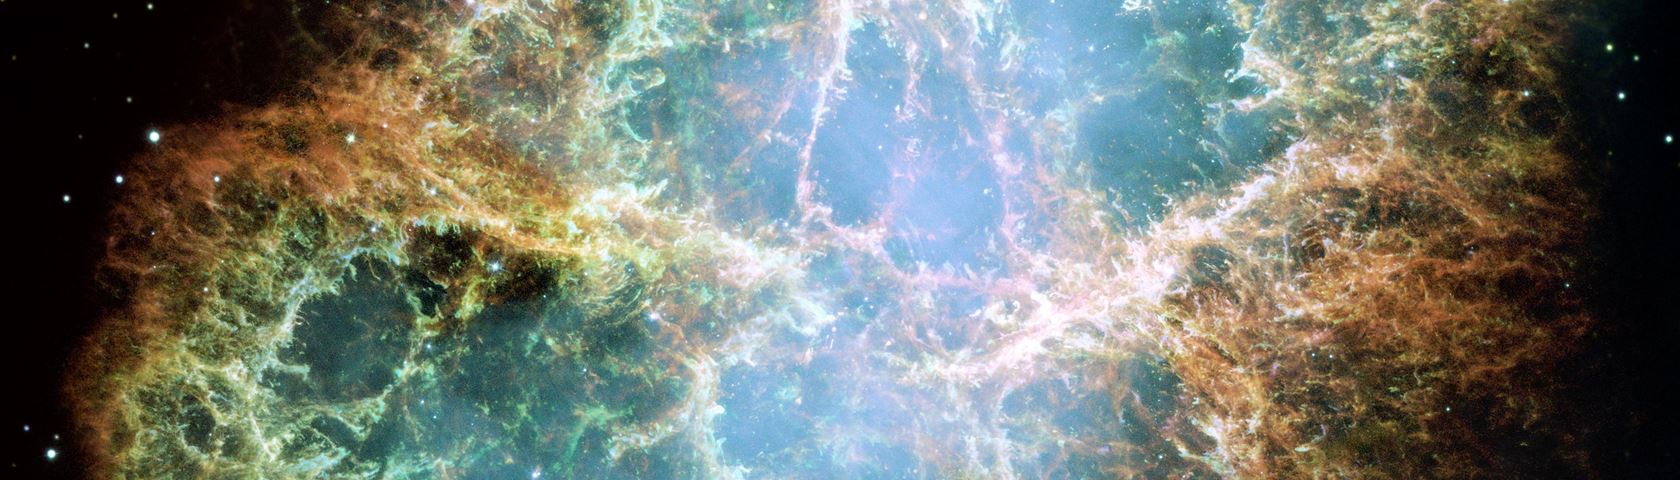 Crab Nebula in Detail